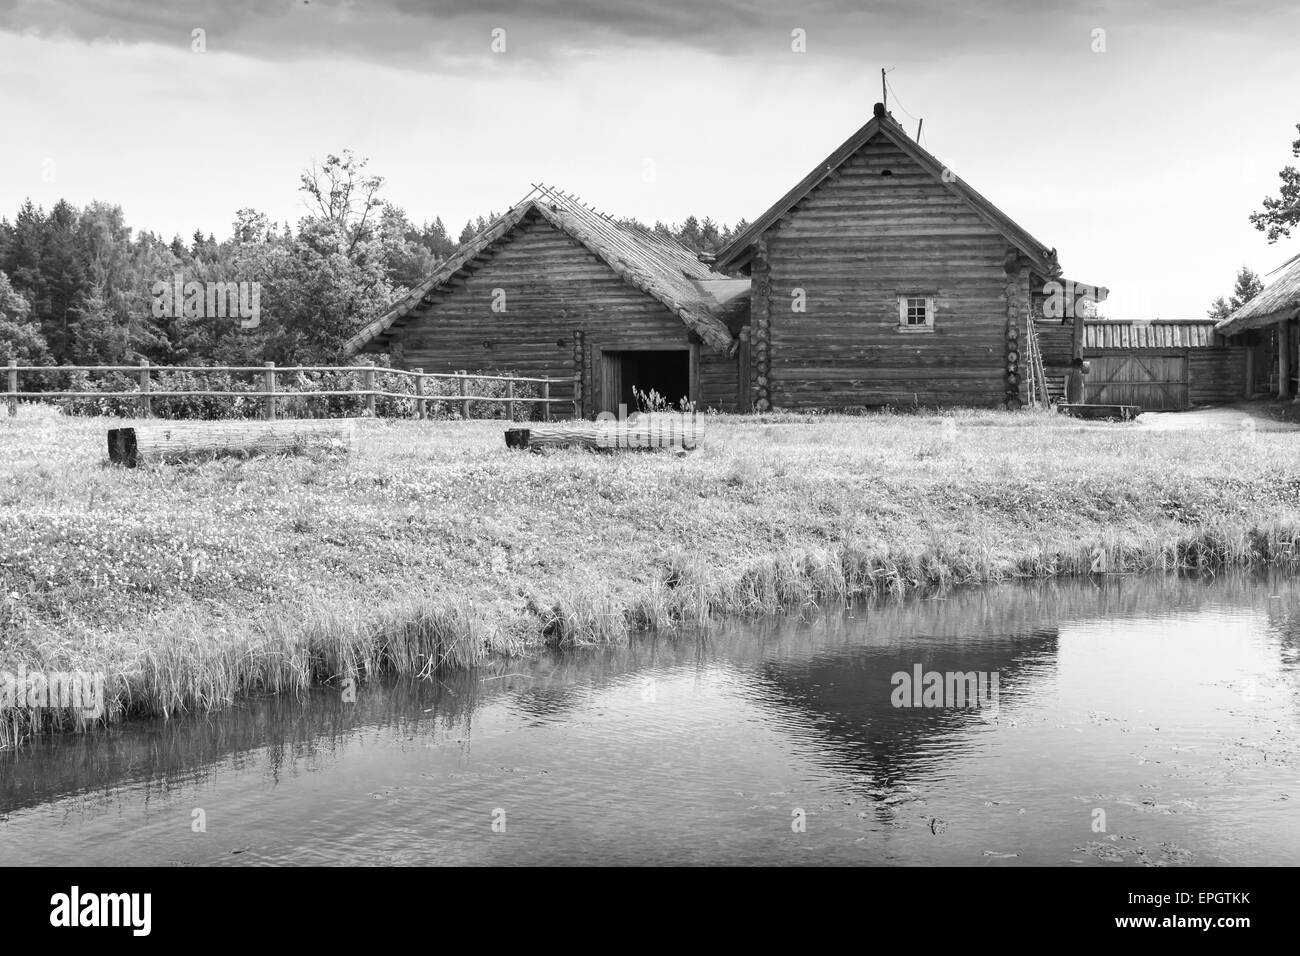 Il russo rurale architettura in legno esempio di vecchie case sulla costa del lago, foto in bianco e nero Foto Stock